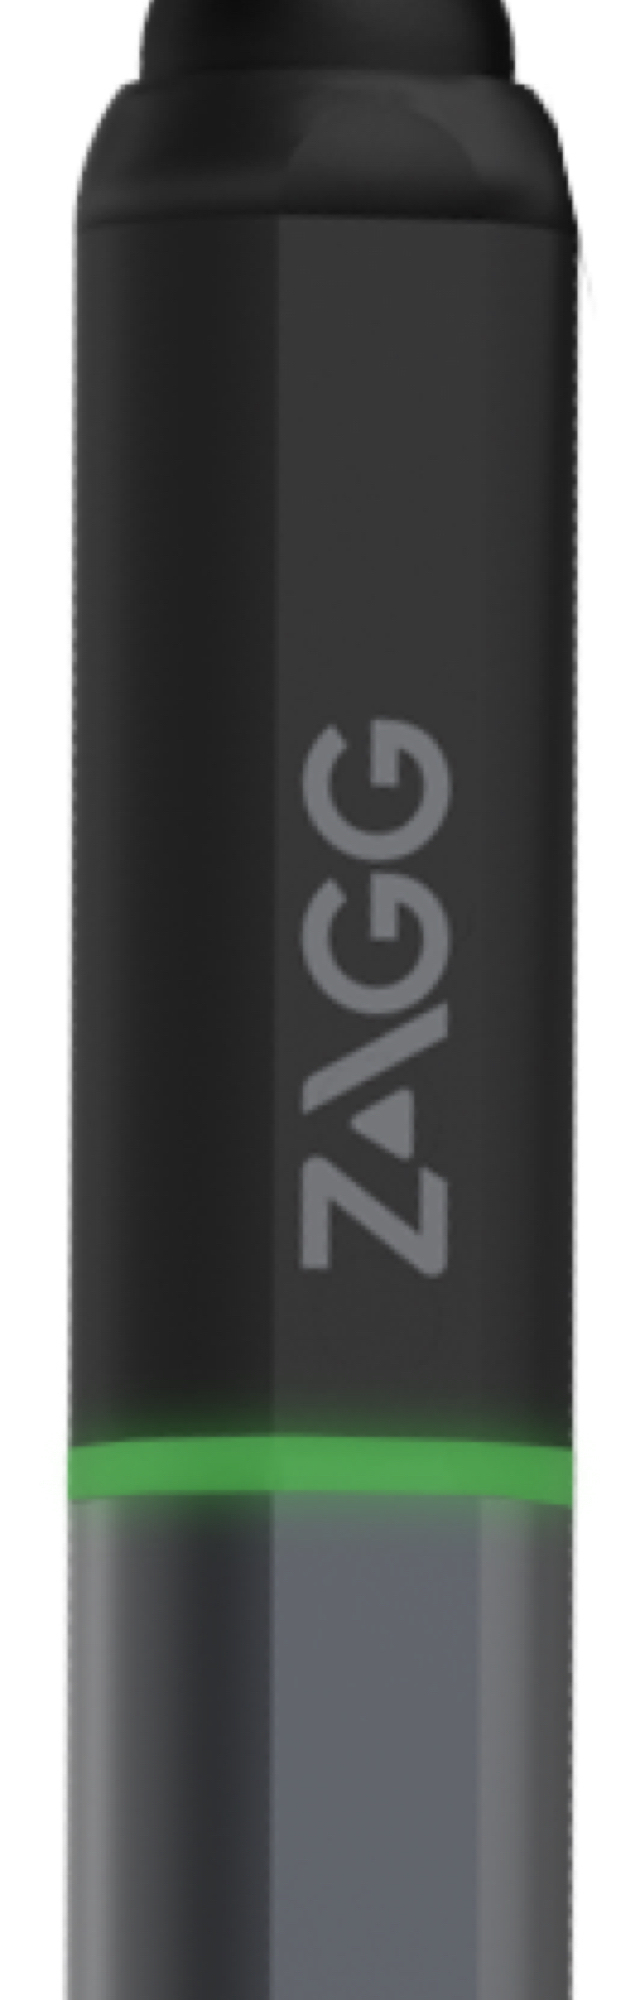 ZAGG Pro Stylus Black